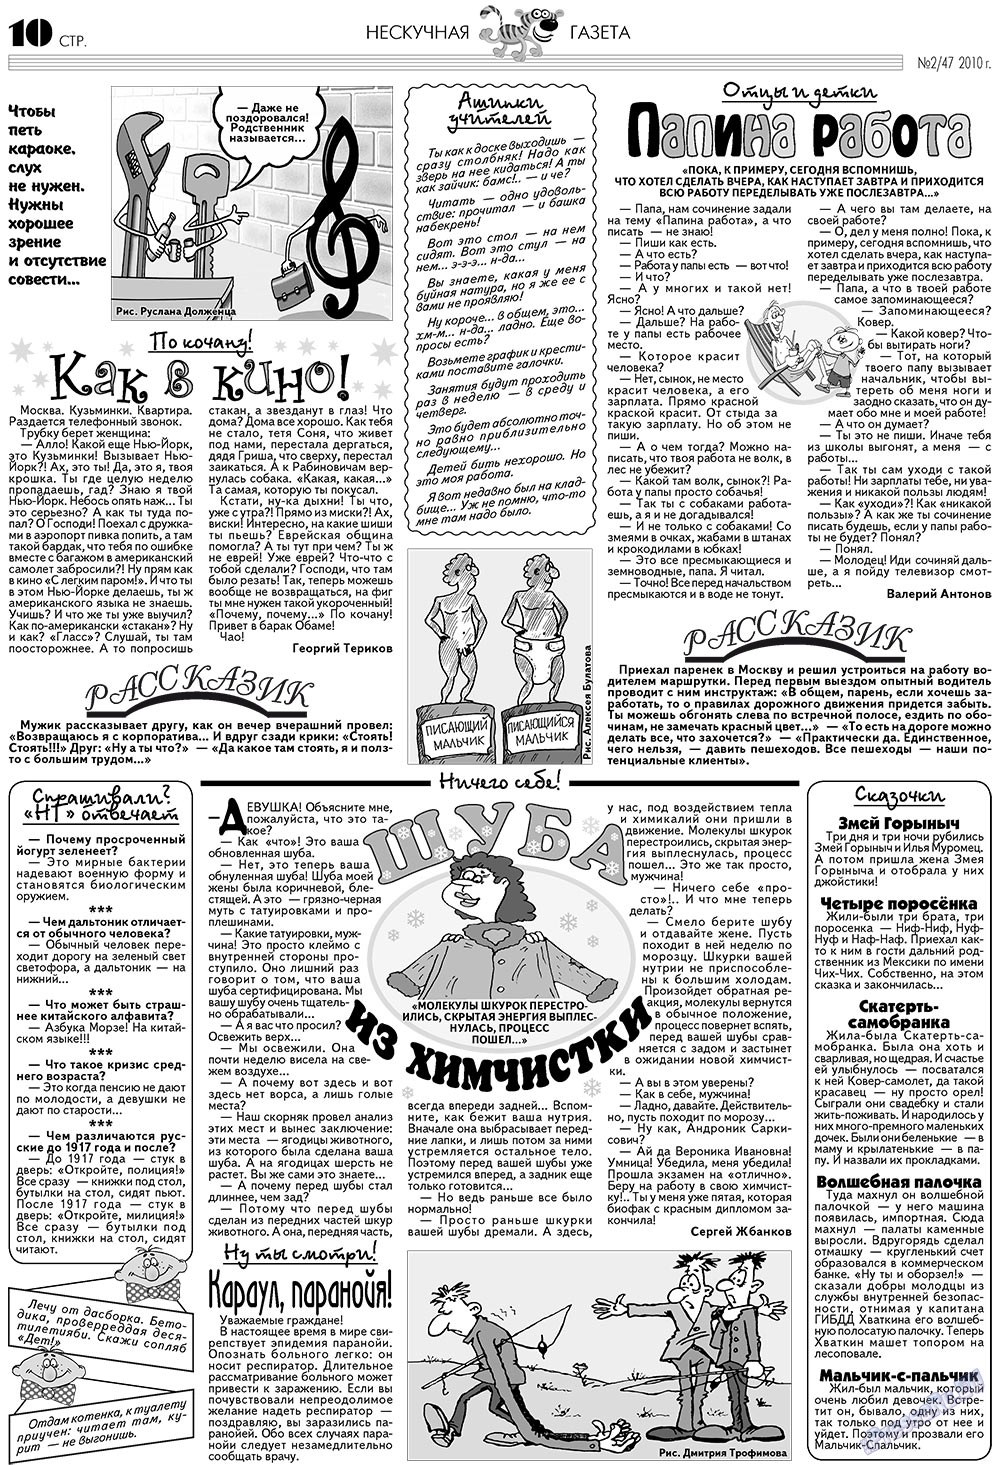 Нескучная газета (журнал). 2010 год, номер 2, стр. 10